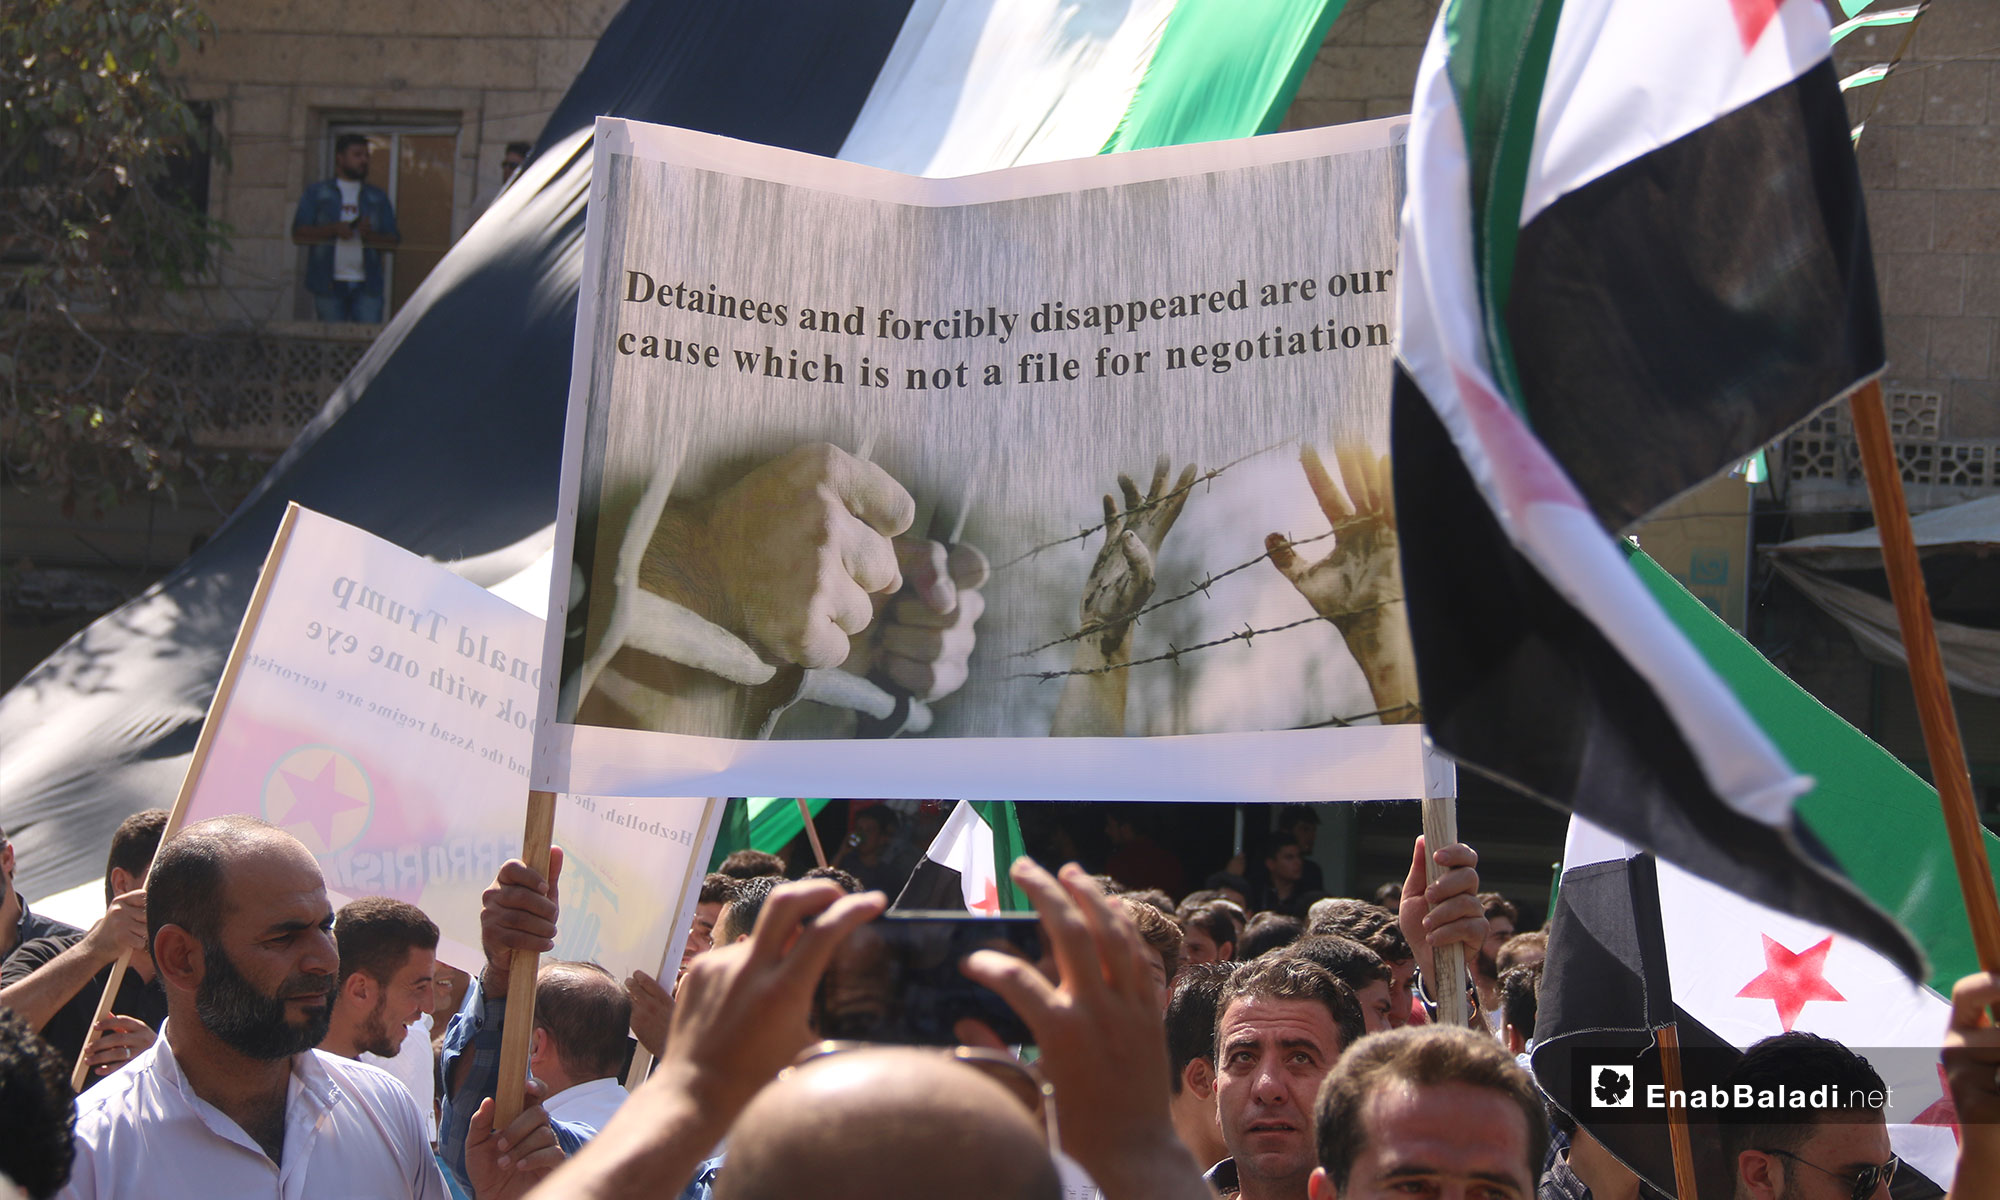 مظاهرات تطالب بتجديد الثورة والإفراج عن المعتقلين في مدينة كفرنبل بريف إدلب  - 21 من أيلول 2018 (عنب بلدي)